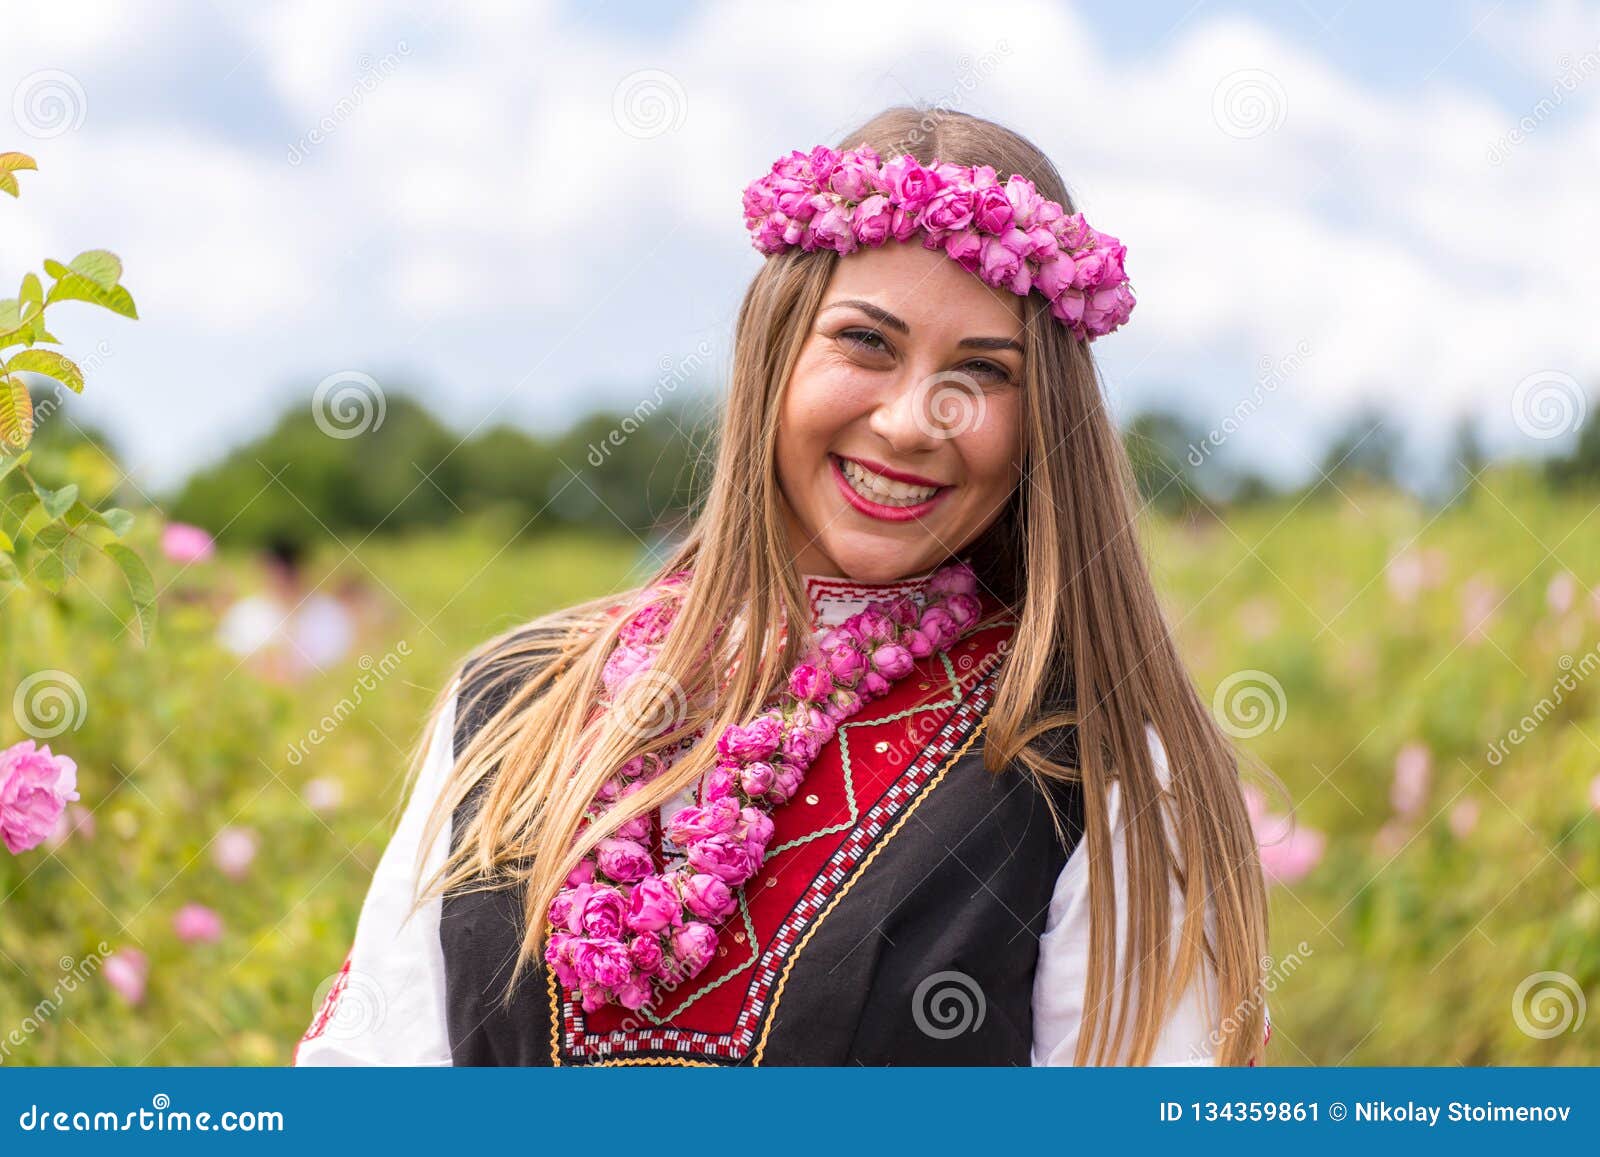 cute bulgarian girl